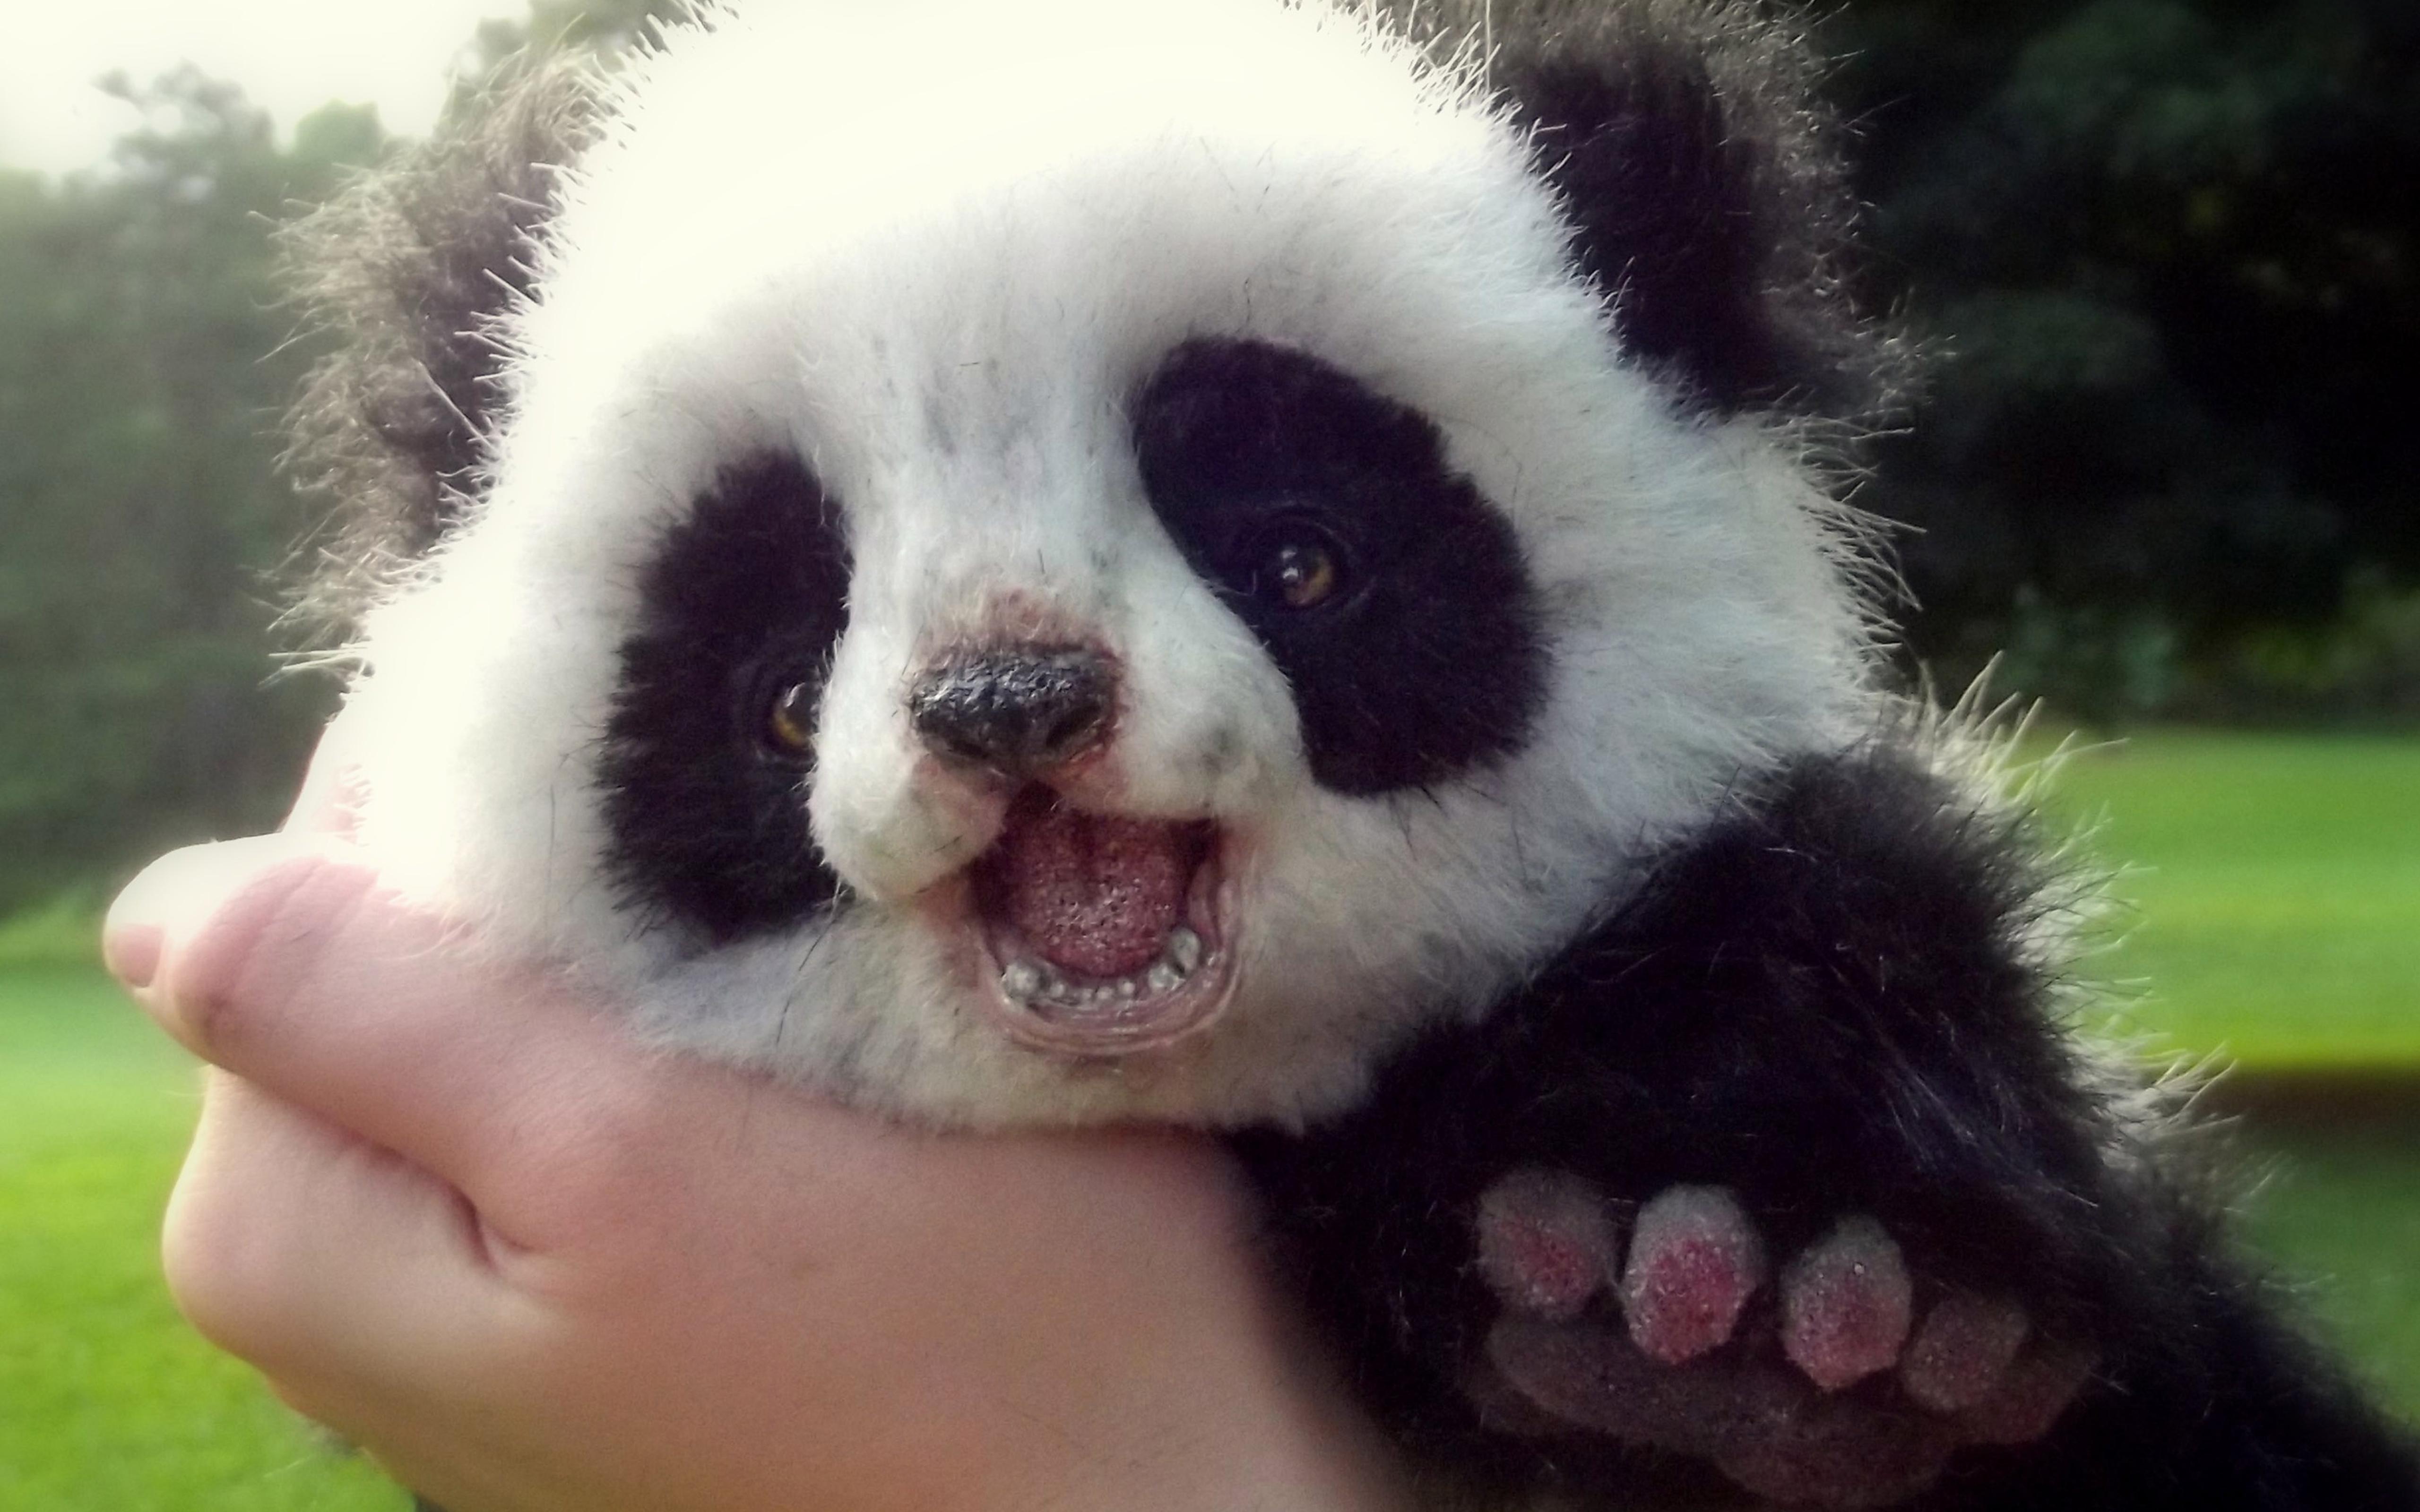 Cute panda bear cub - Wild animals wallpaper